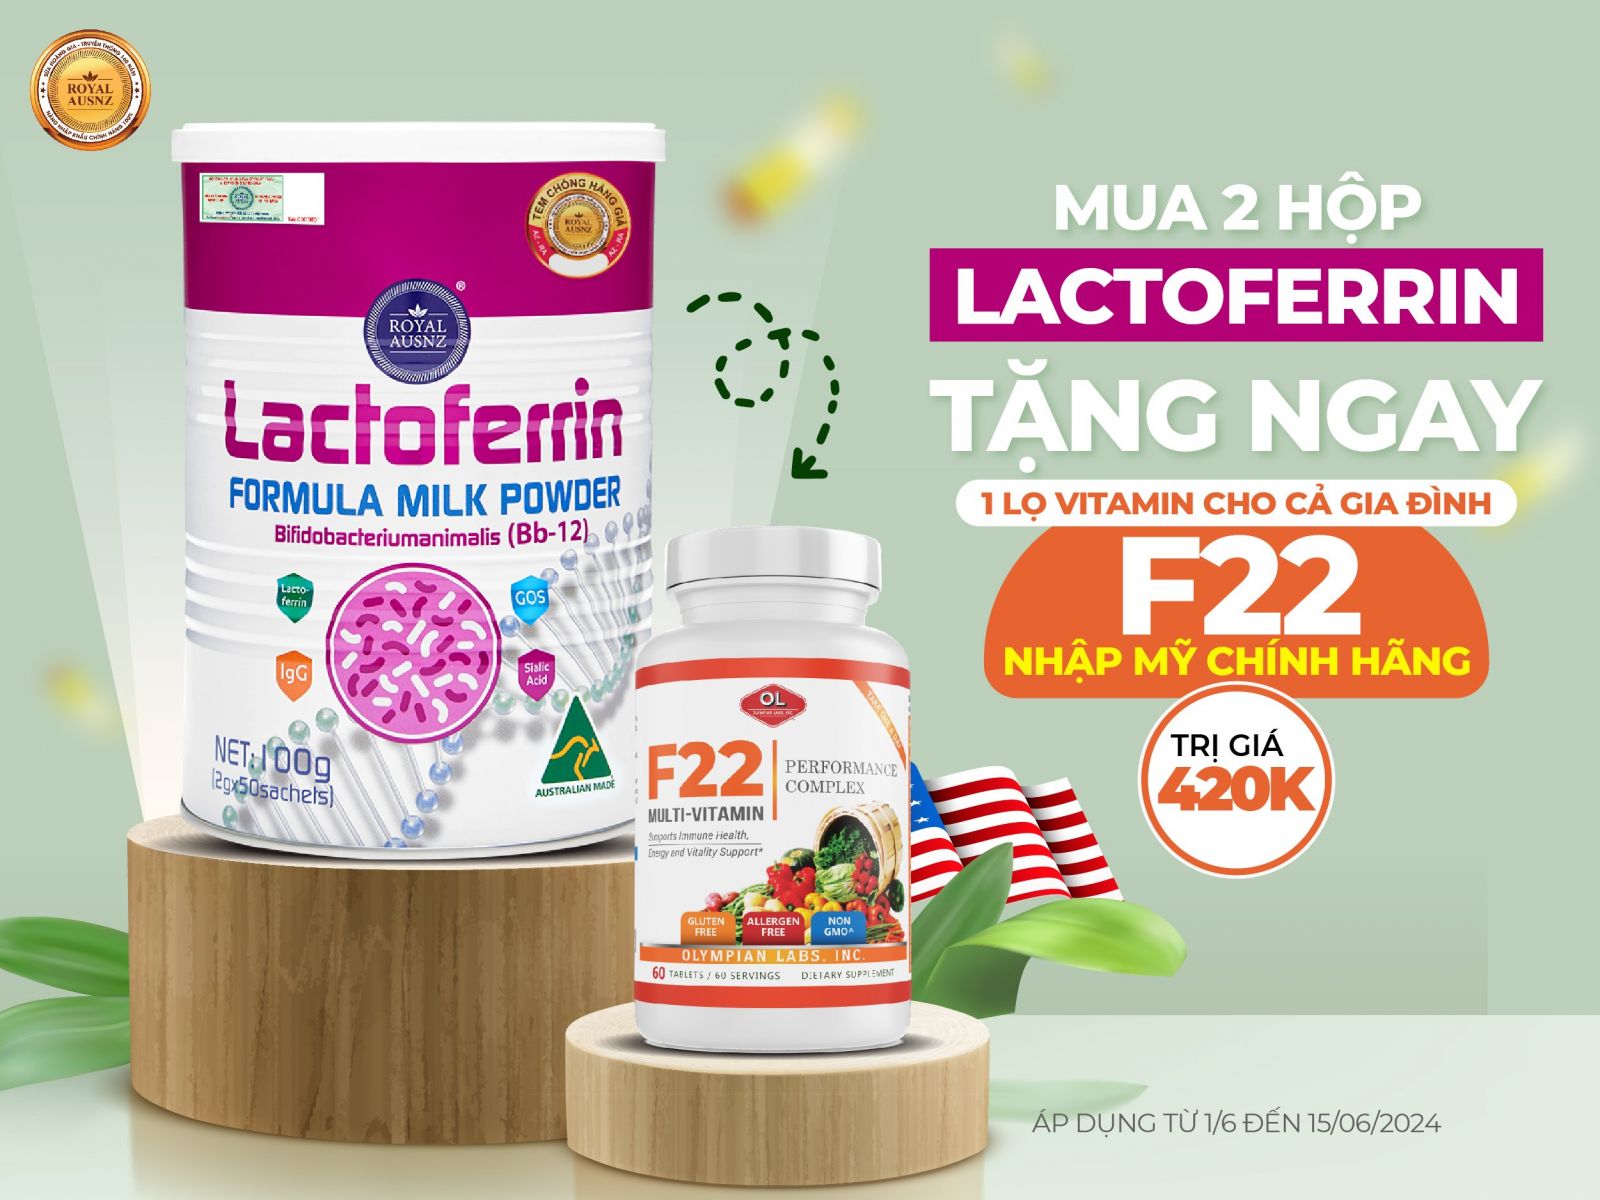 Mua 2 Lactoferrin Hồng - Tặng 1 Olympian Labs F22: Vitamin tổng hợp cho cả gia đình